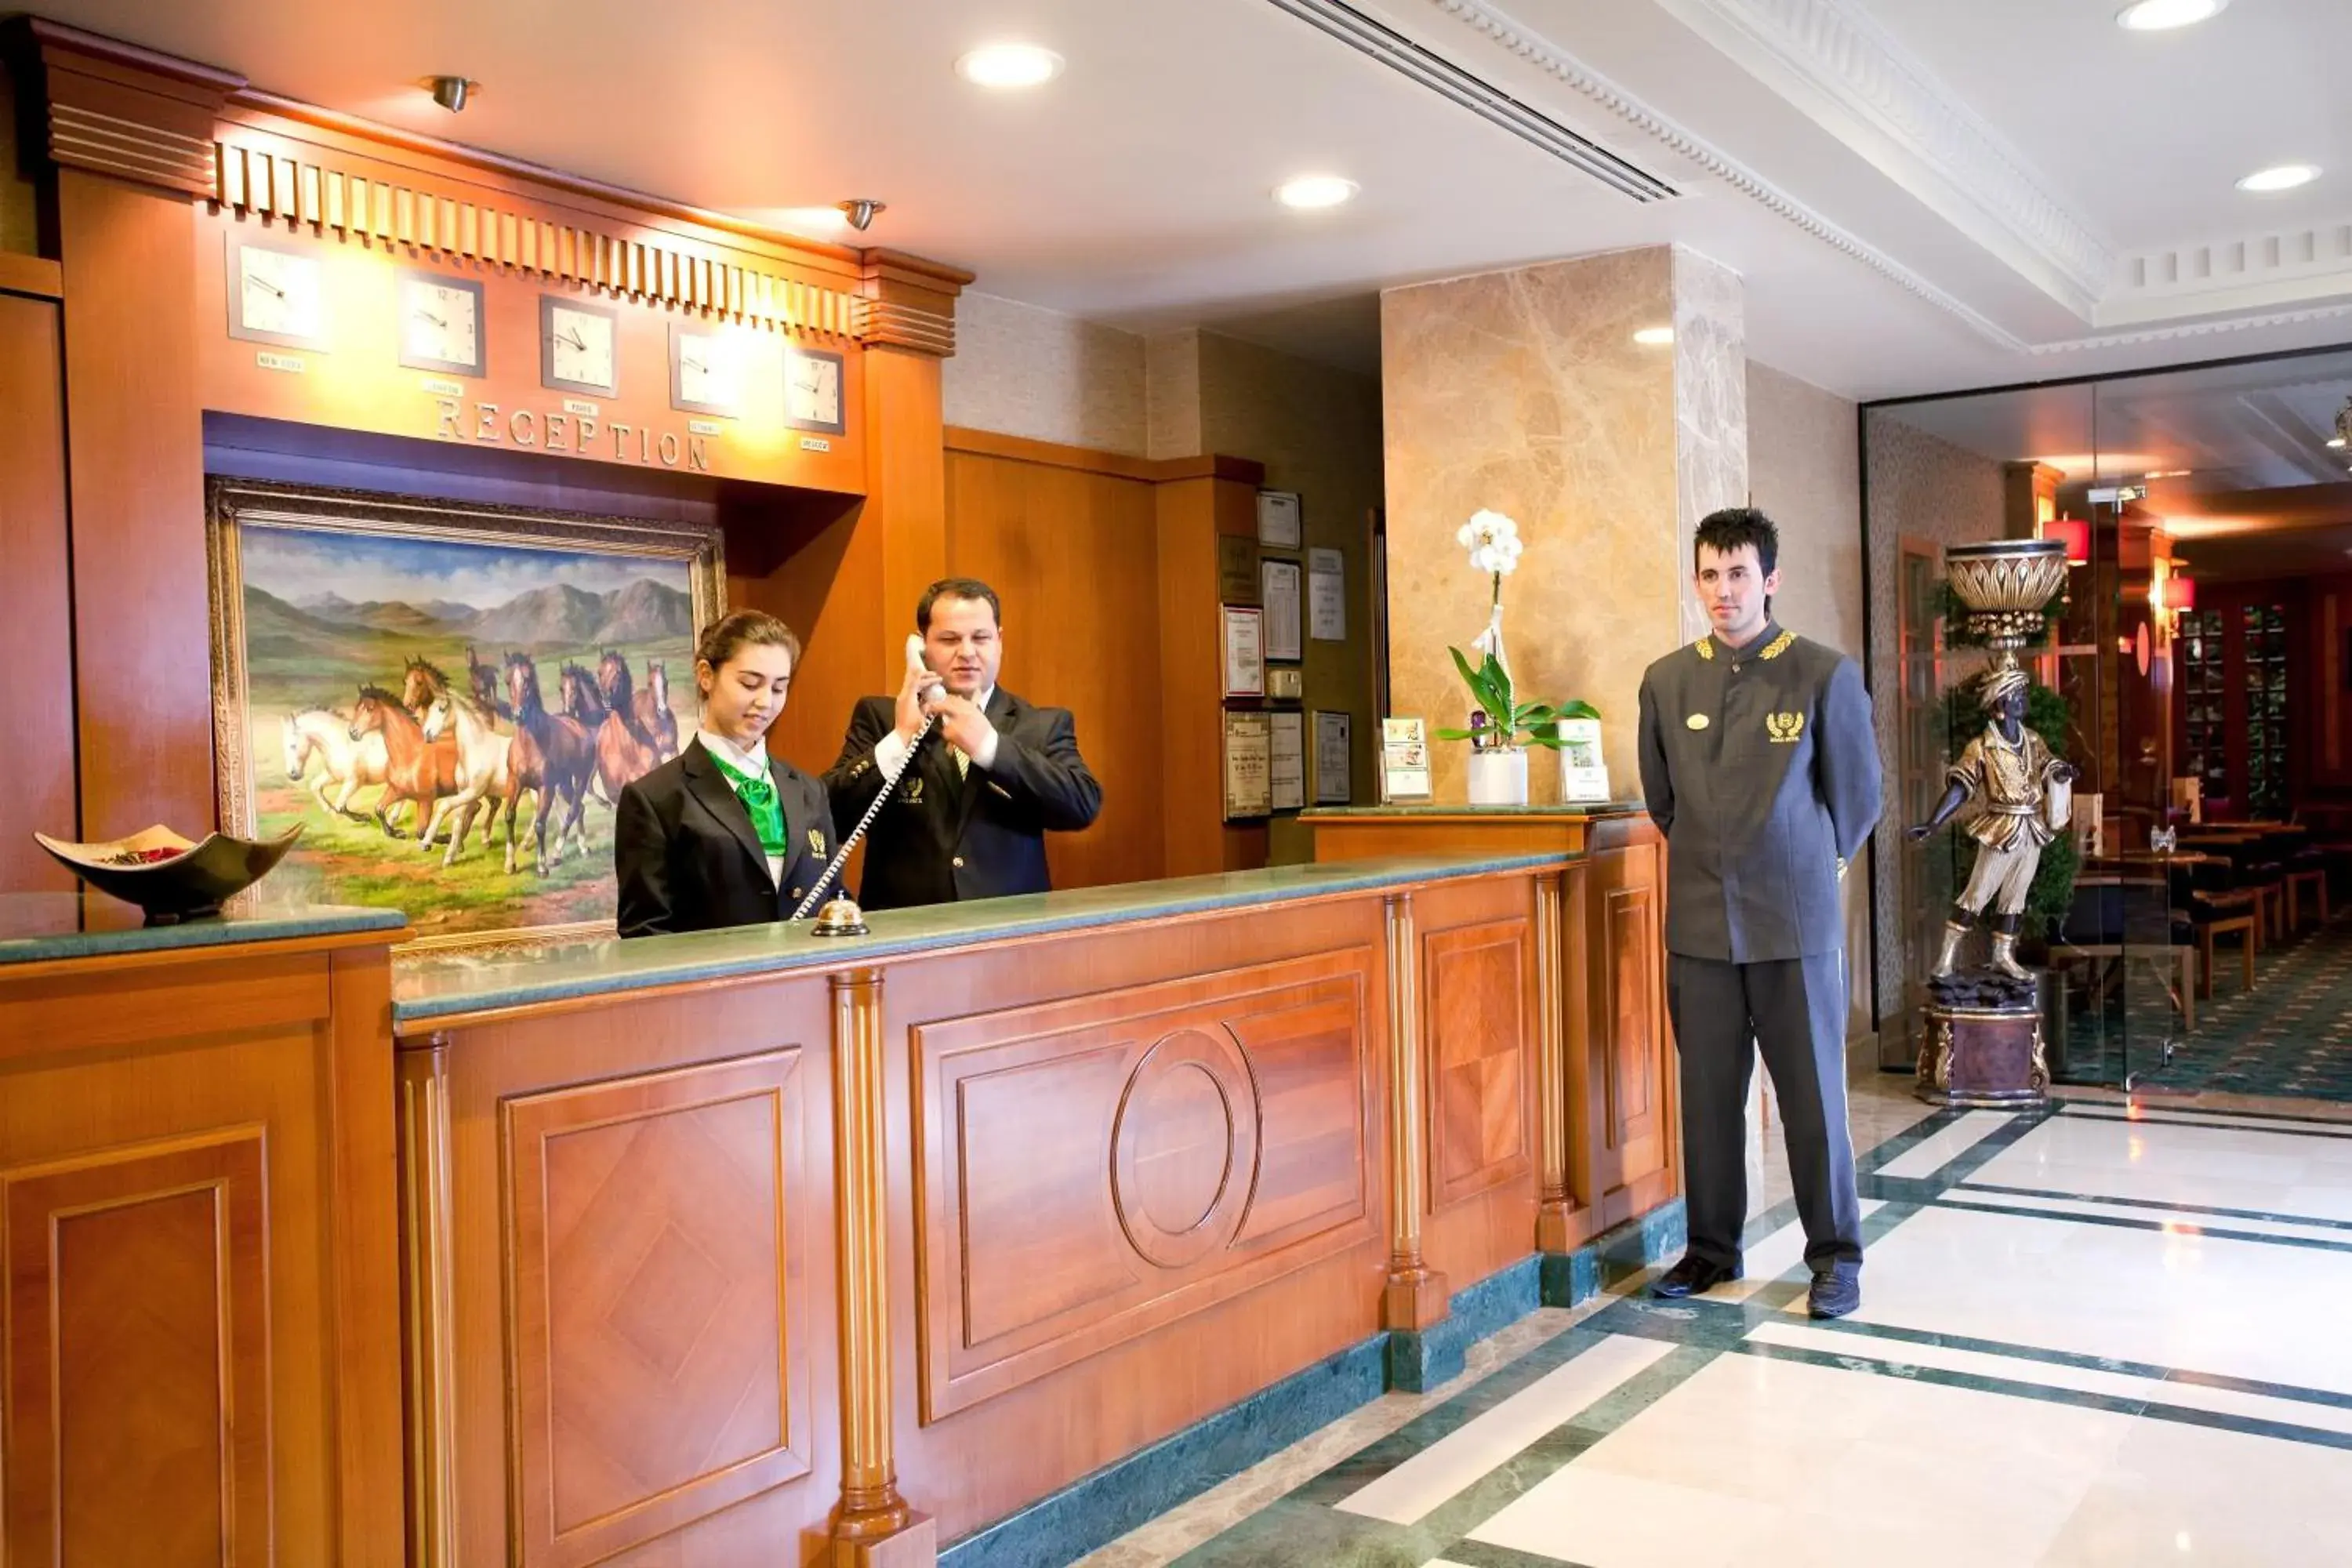 Lobby or reception in Oran Hotel